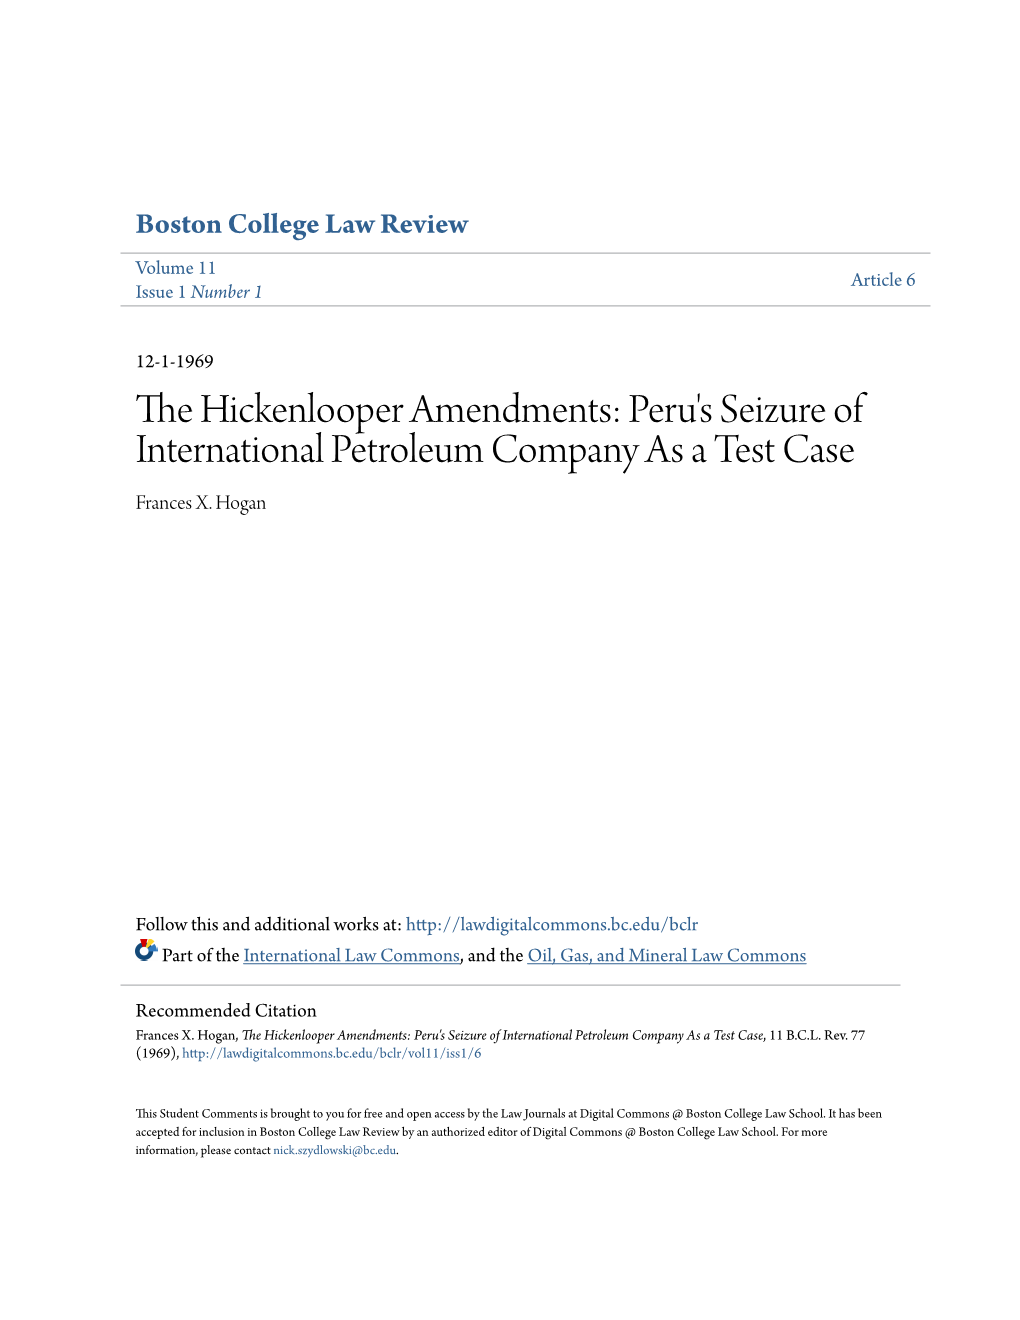 The Hickenlooper Amendments: Peru's Seizure of International Petroleum Company As a Test Case, 11 B.C.L